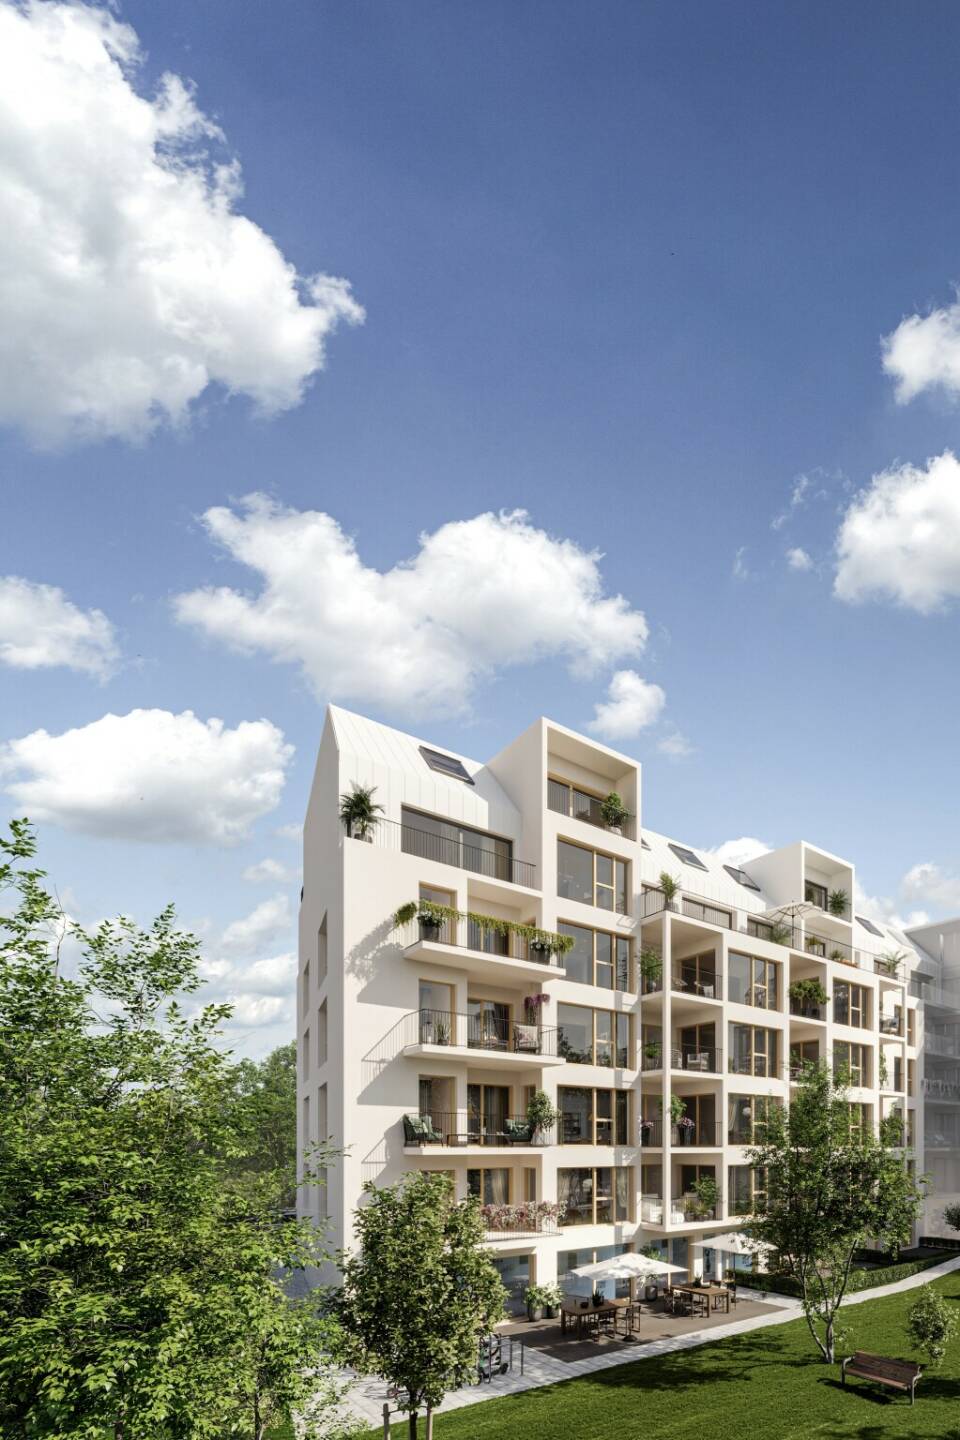 IFA startet mit neuem Investment in Wien, „Wohnpark Liesing II“ ist das bereits 488. Bauherrenmodell, das IFA anbietet. Credit: IFA AG